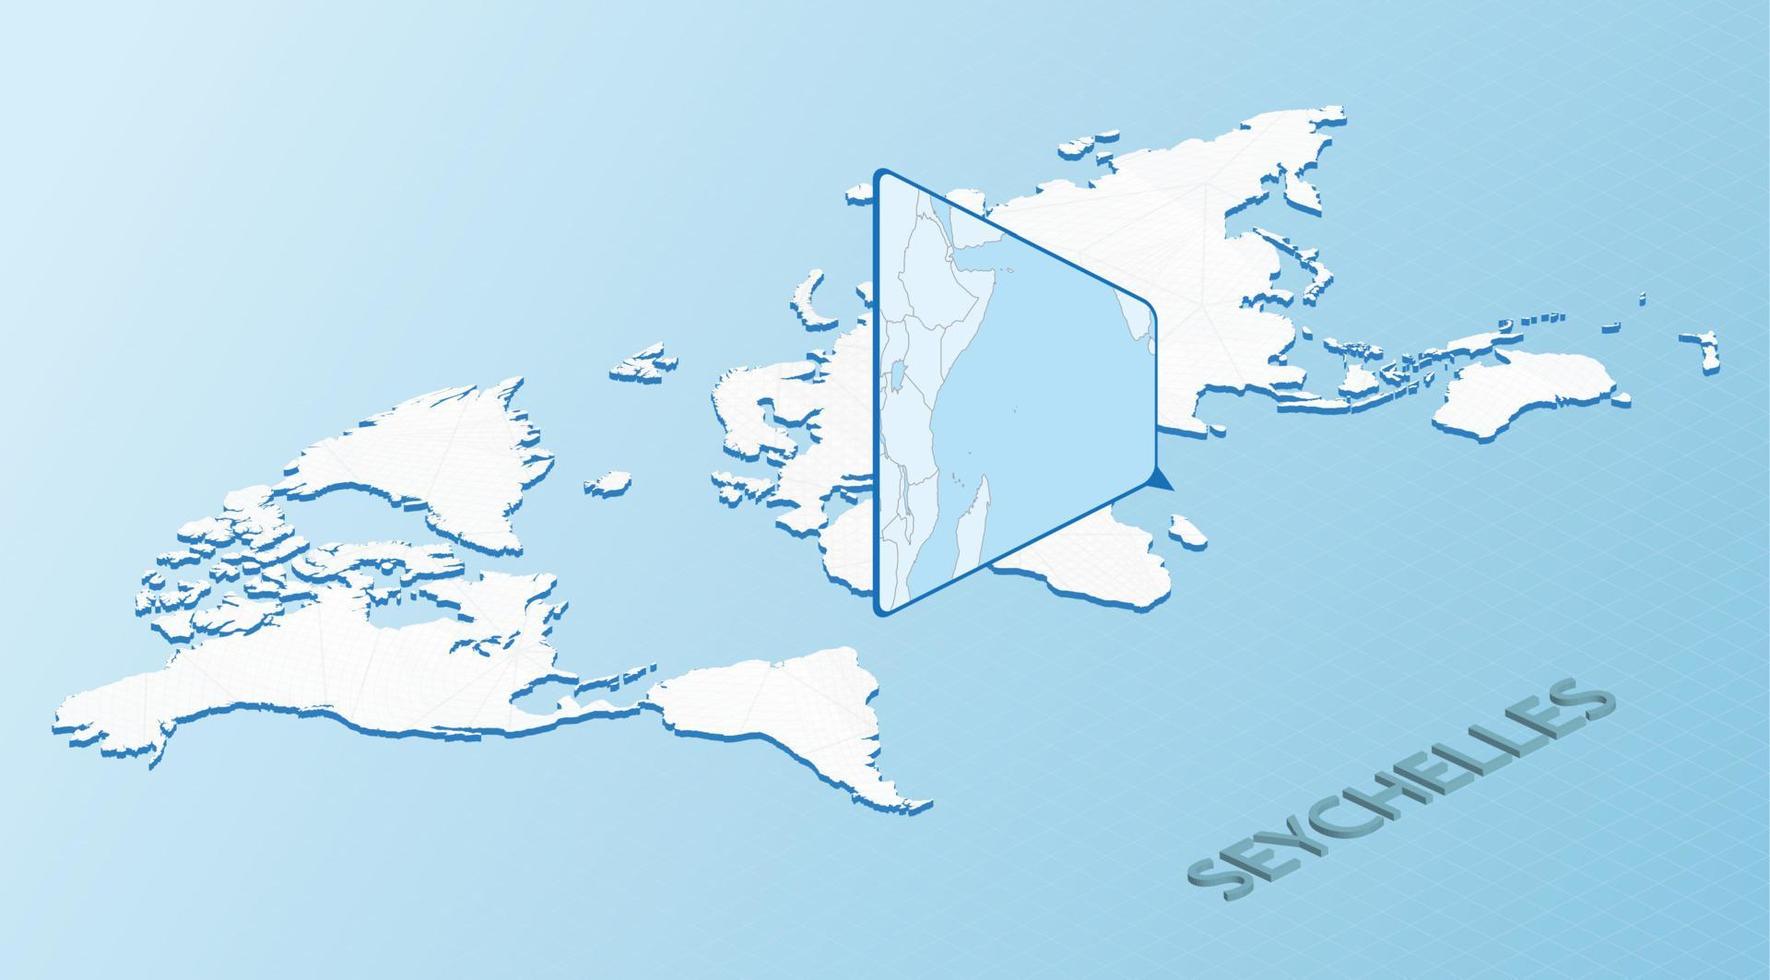 mapa mundial en estilo isométrico con mapa detallado de seychelles. mapa de seychelles azul claro con mapa del mundo abstracto. vector